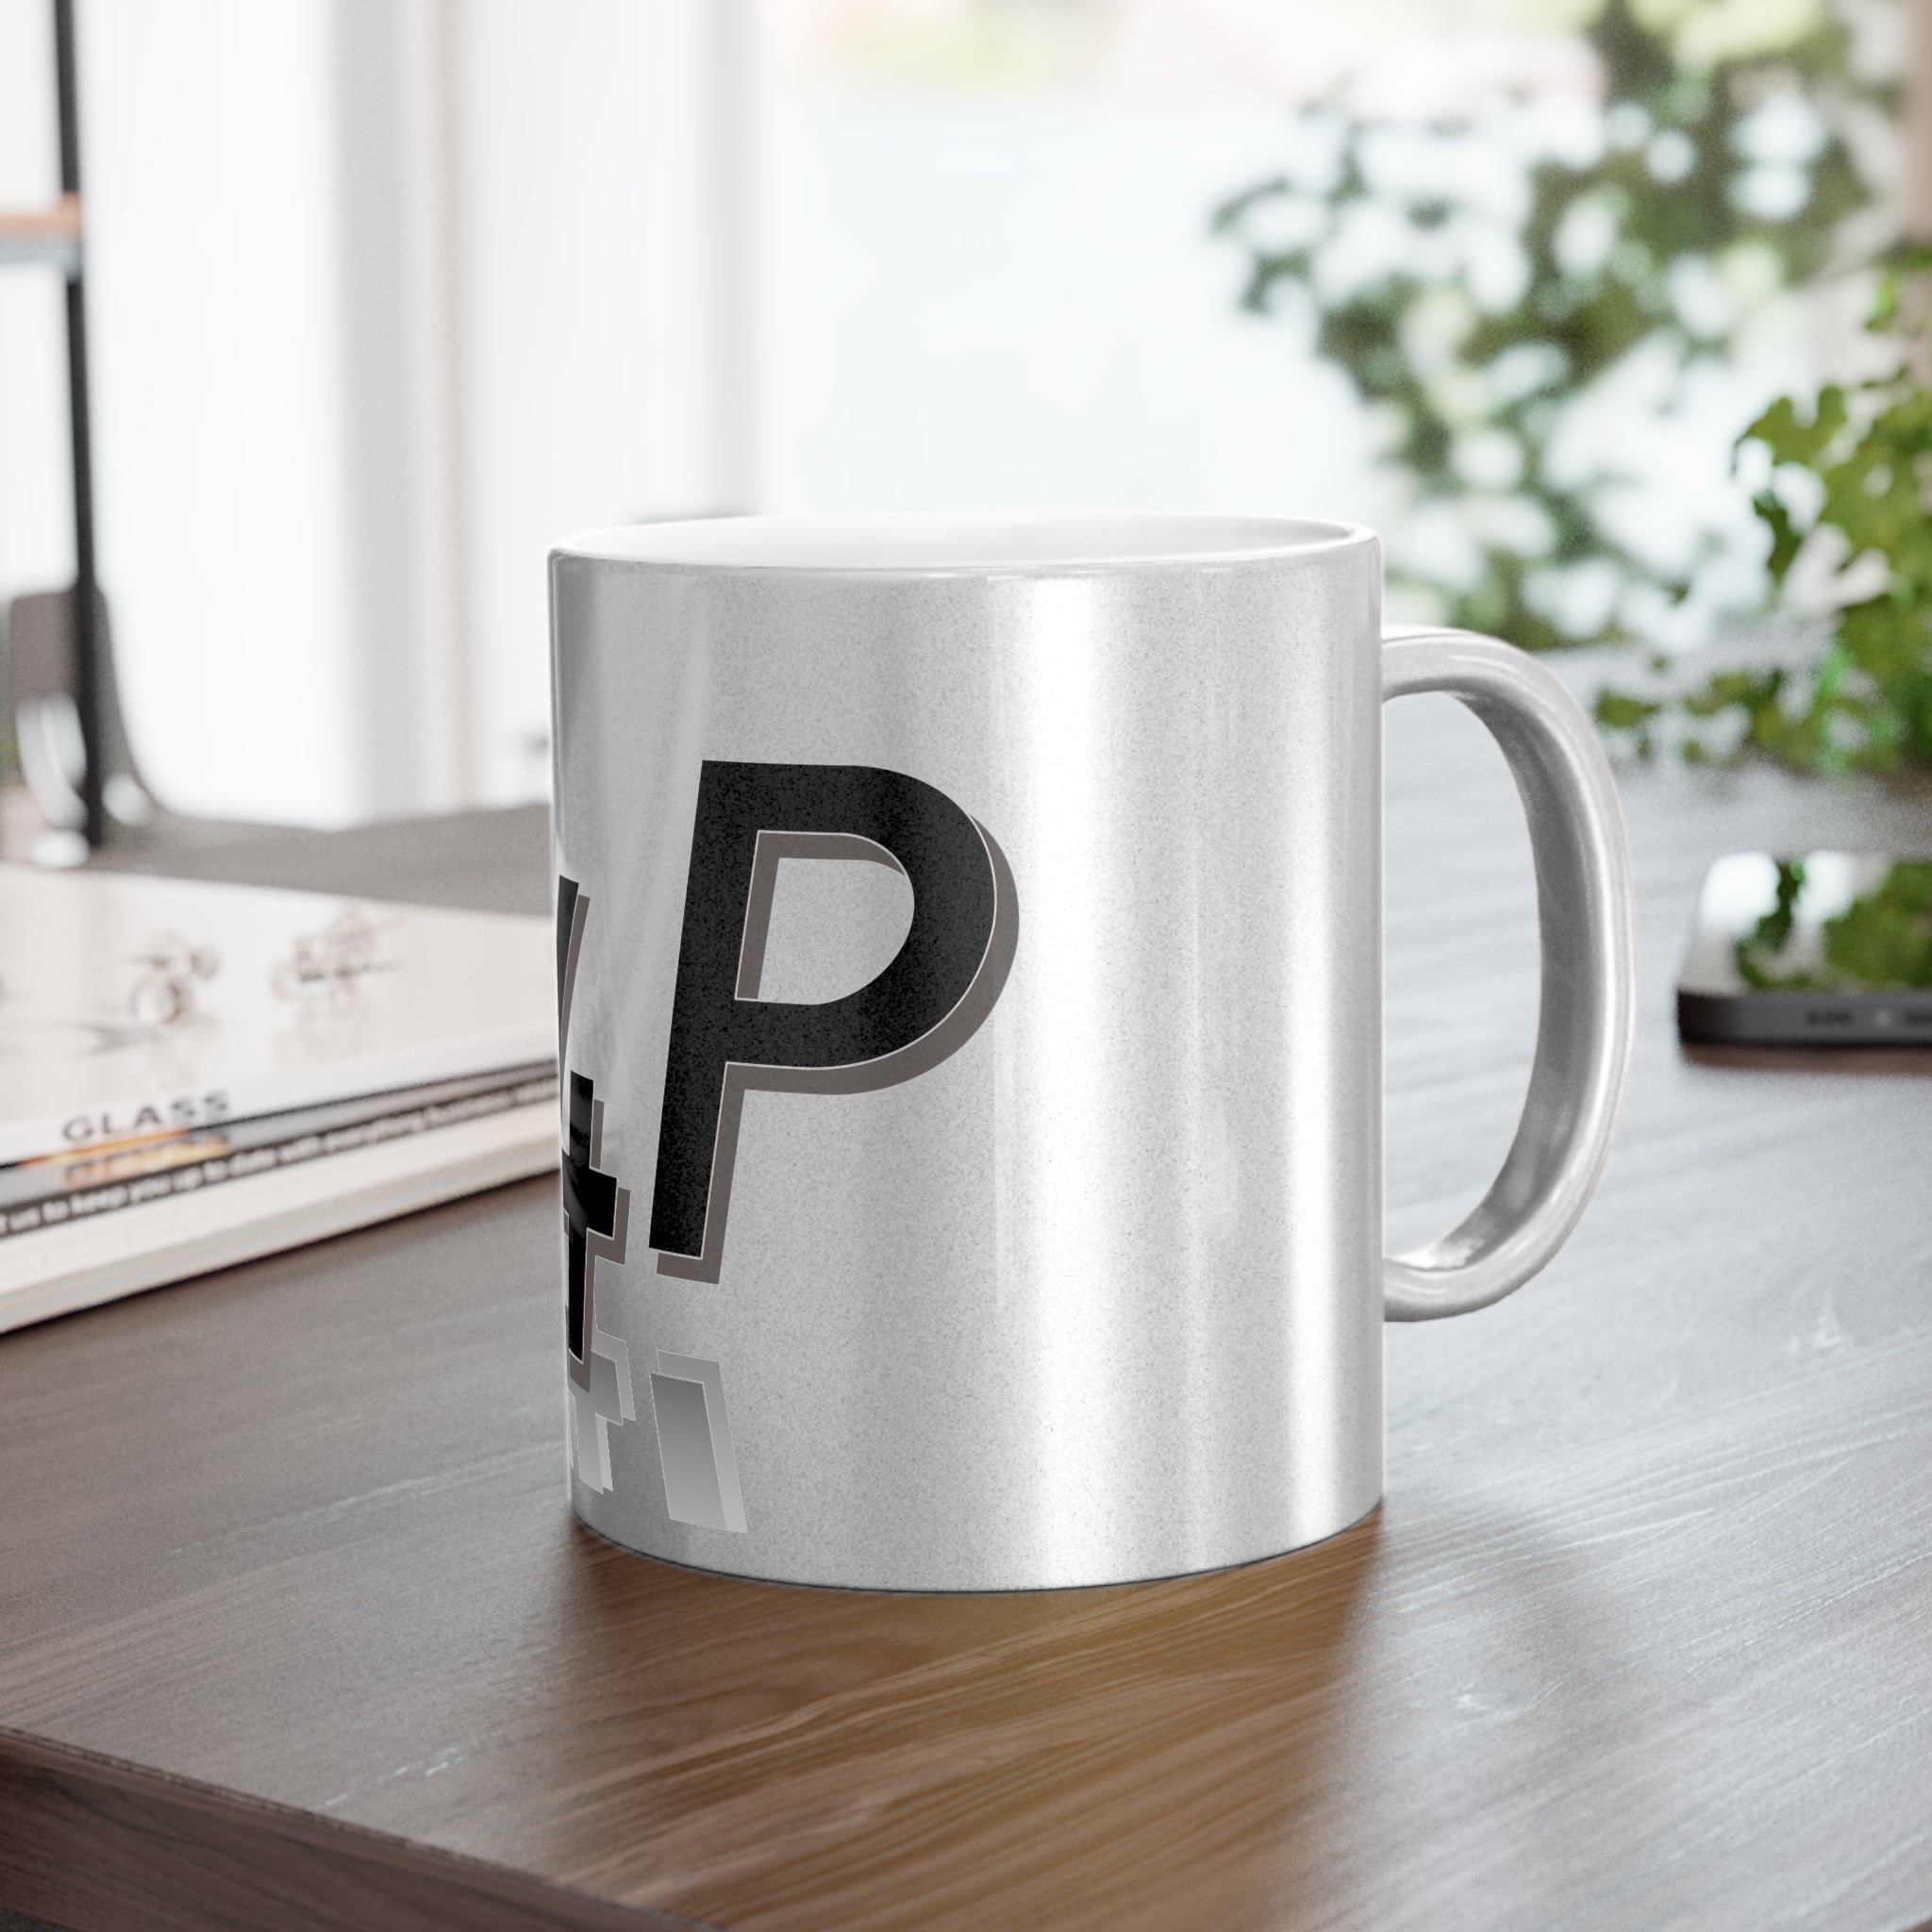 R4P Metallic Mug (Gold\Silver)